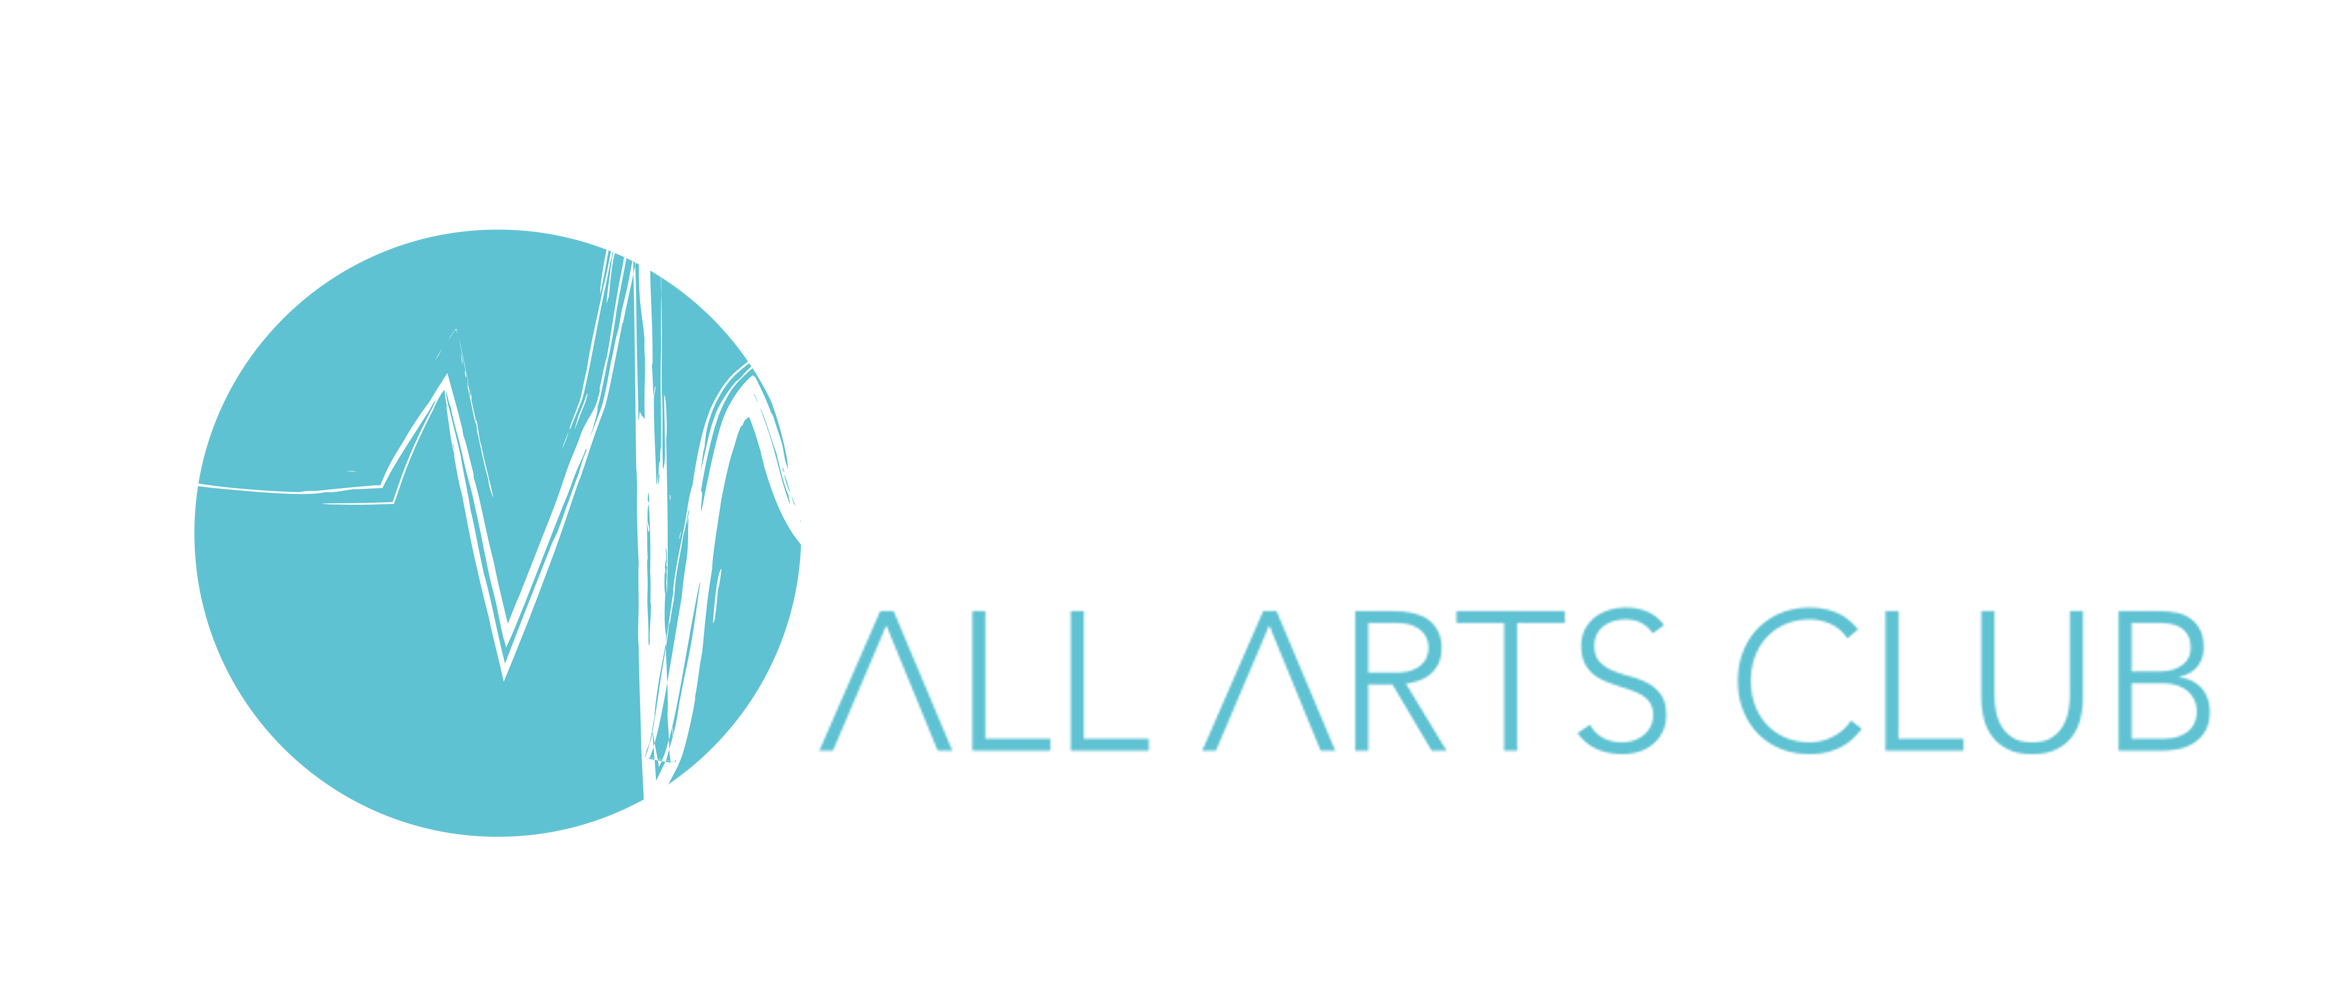 All Arts Club